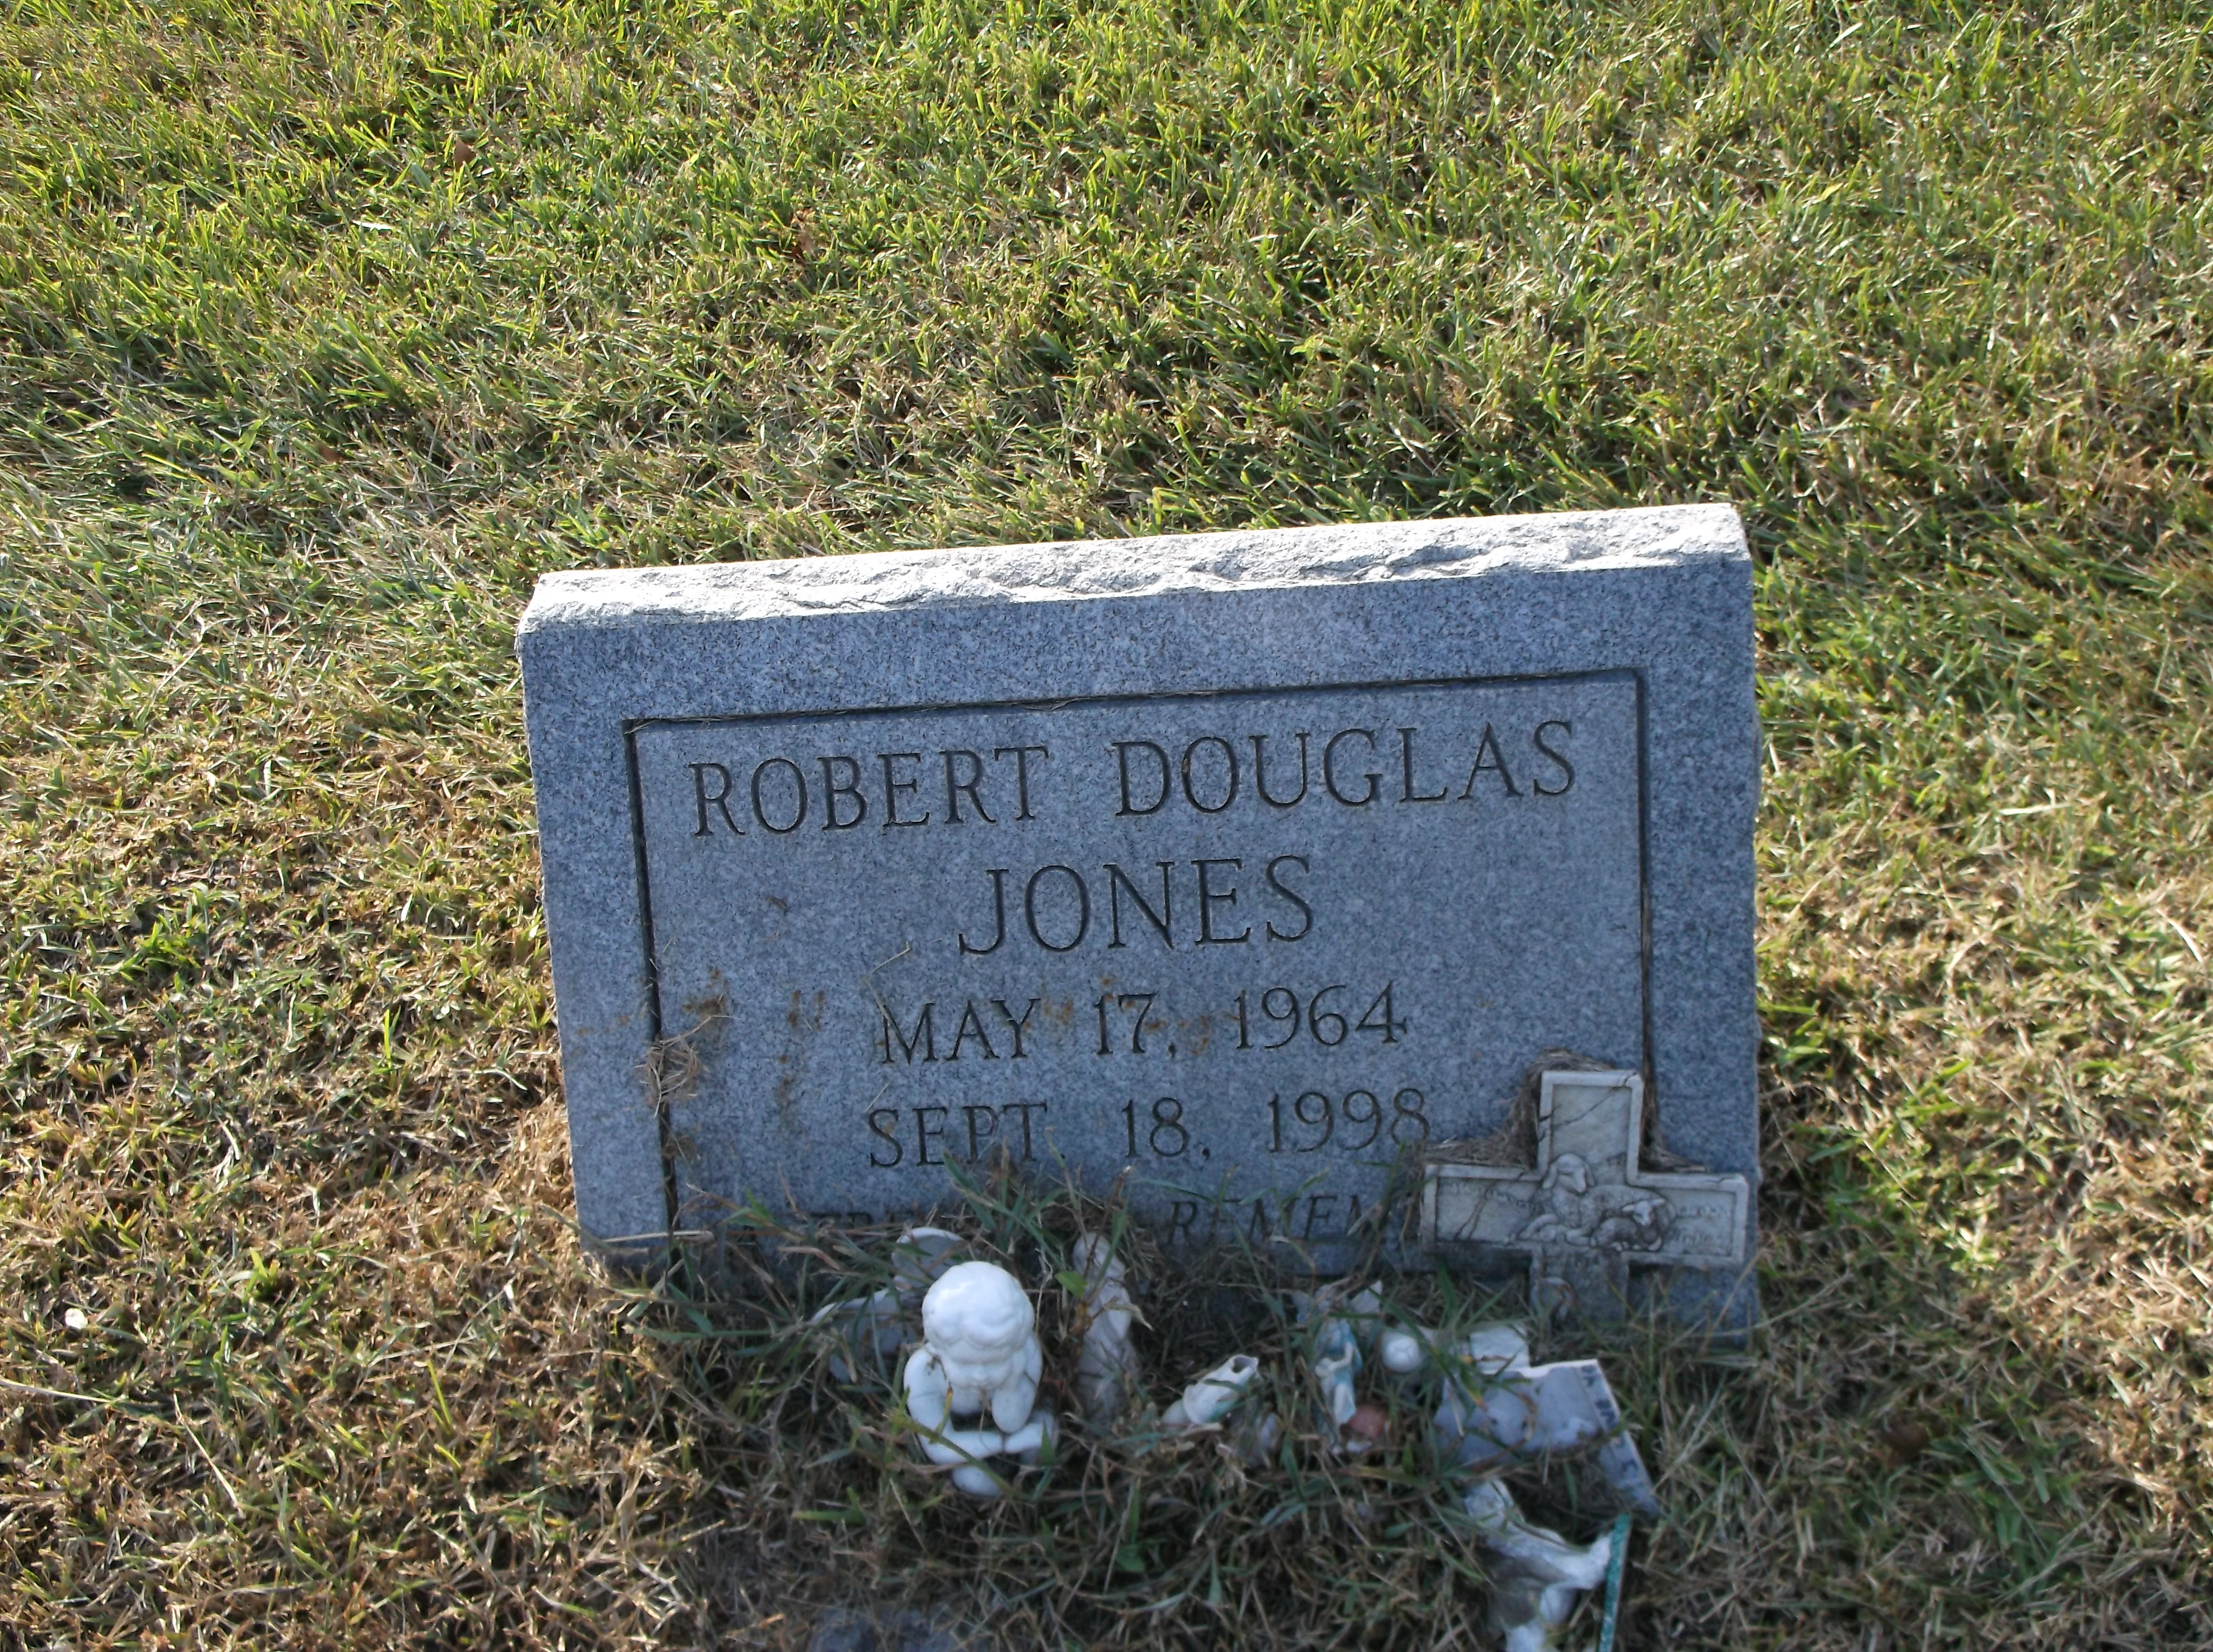 Robert Douglas Jones